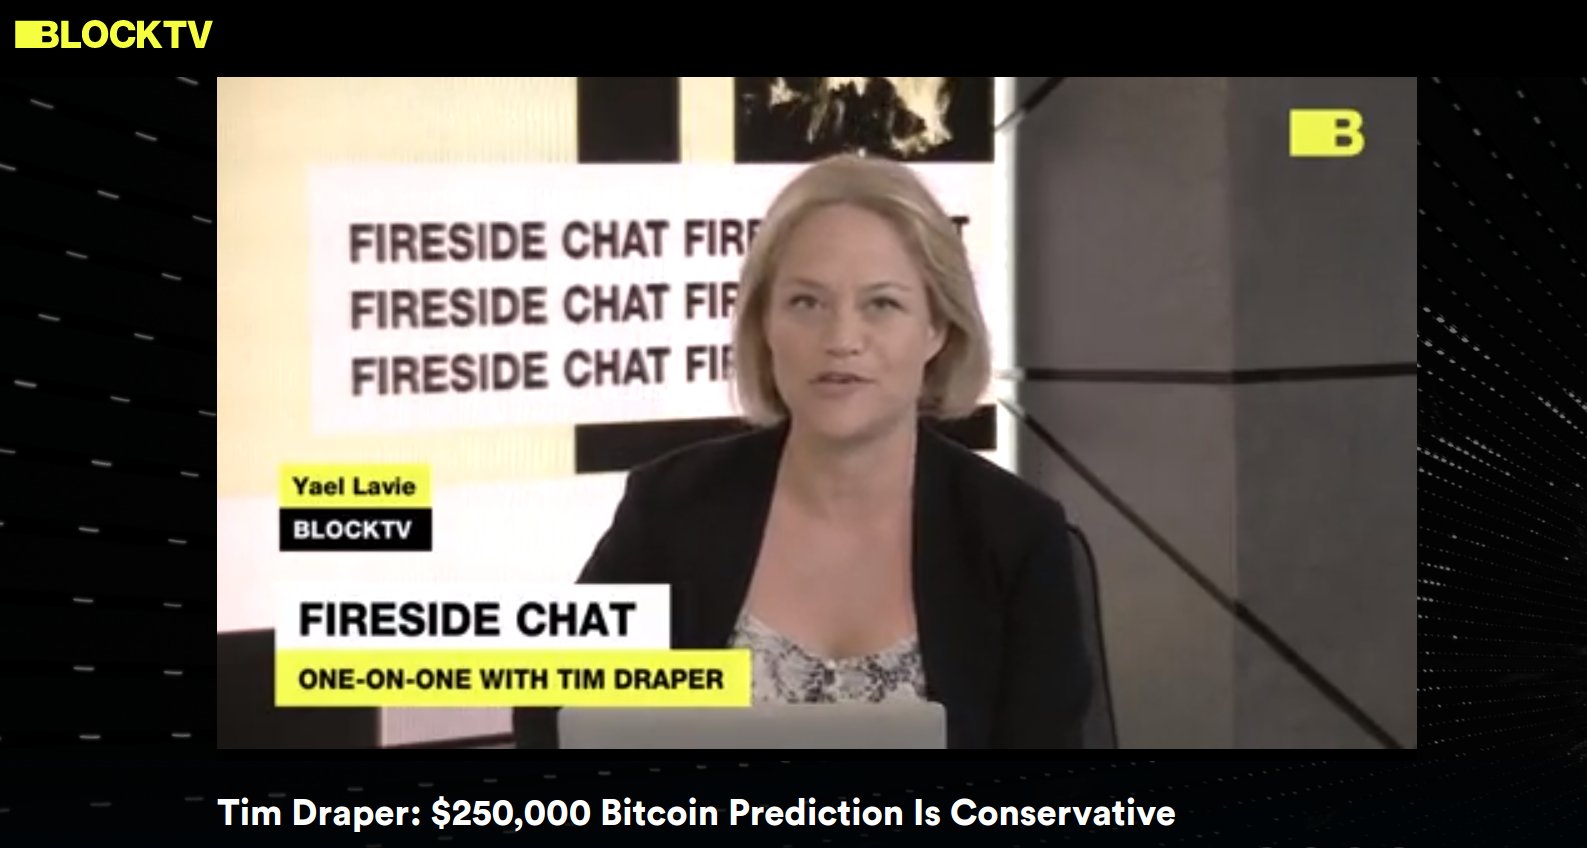 Im Gespräch mit BlockTV erklärte Draper, dass seine berühmte 250.000 $ Bitcoin-Preisprognose konservativ ist.